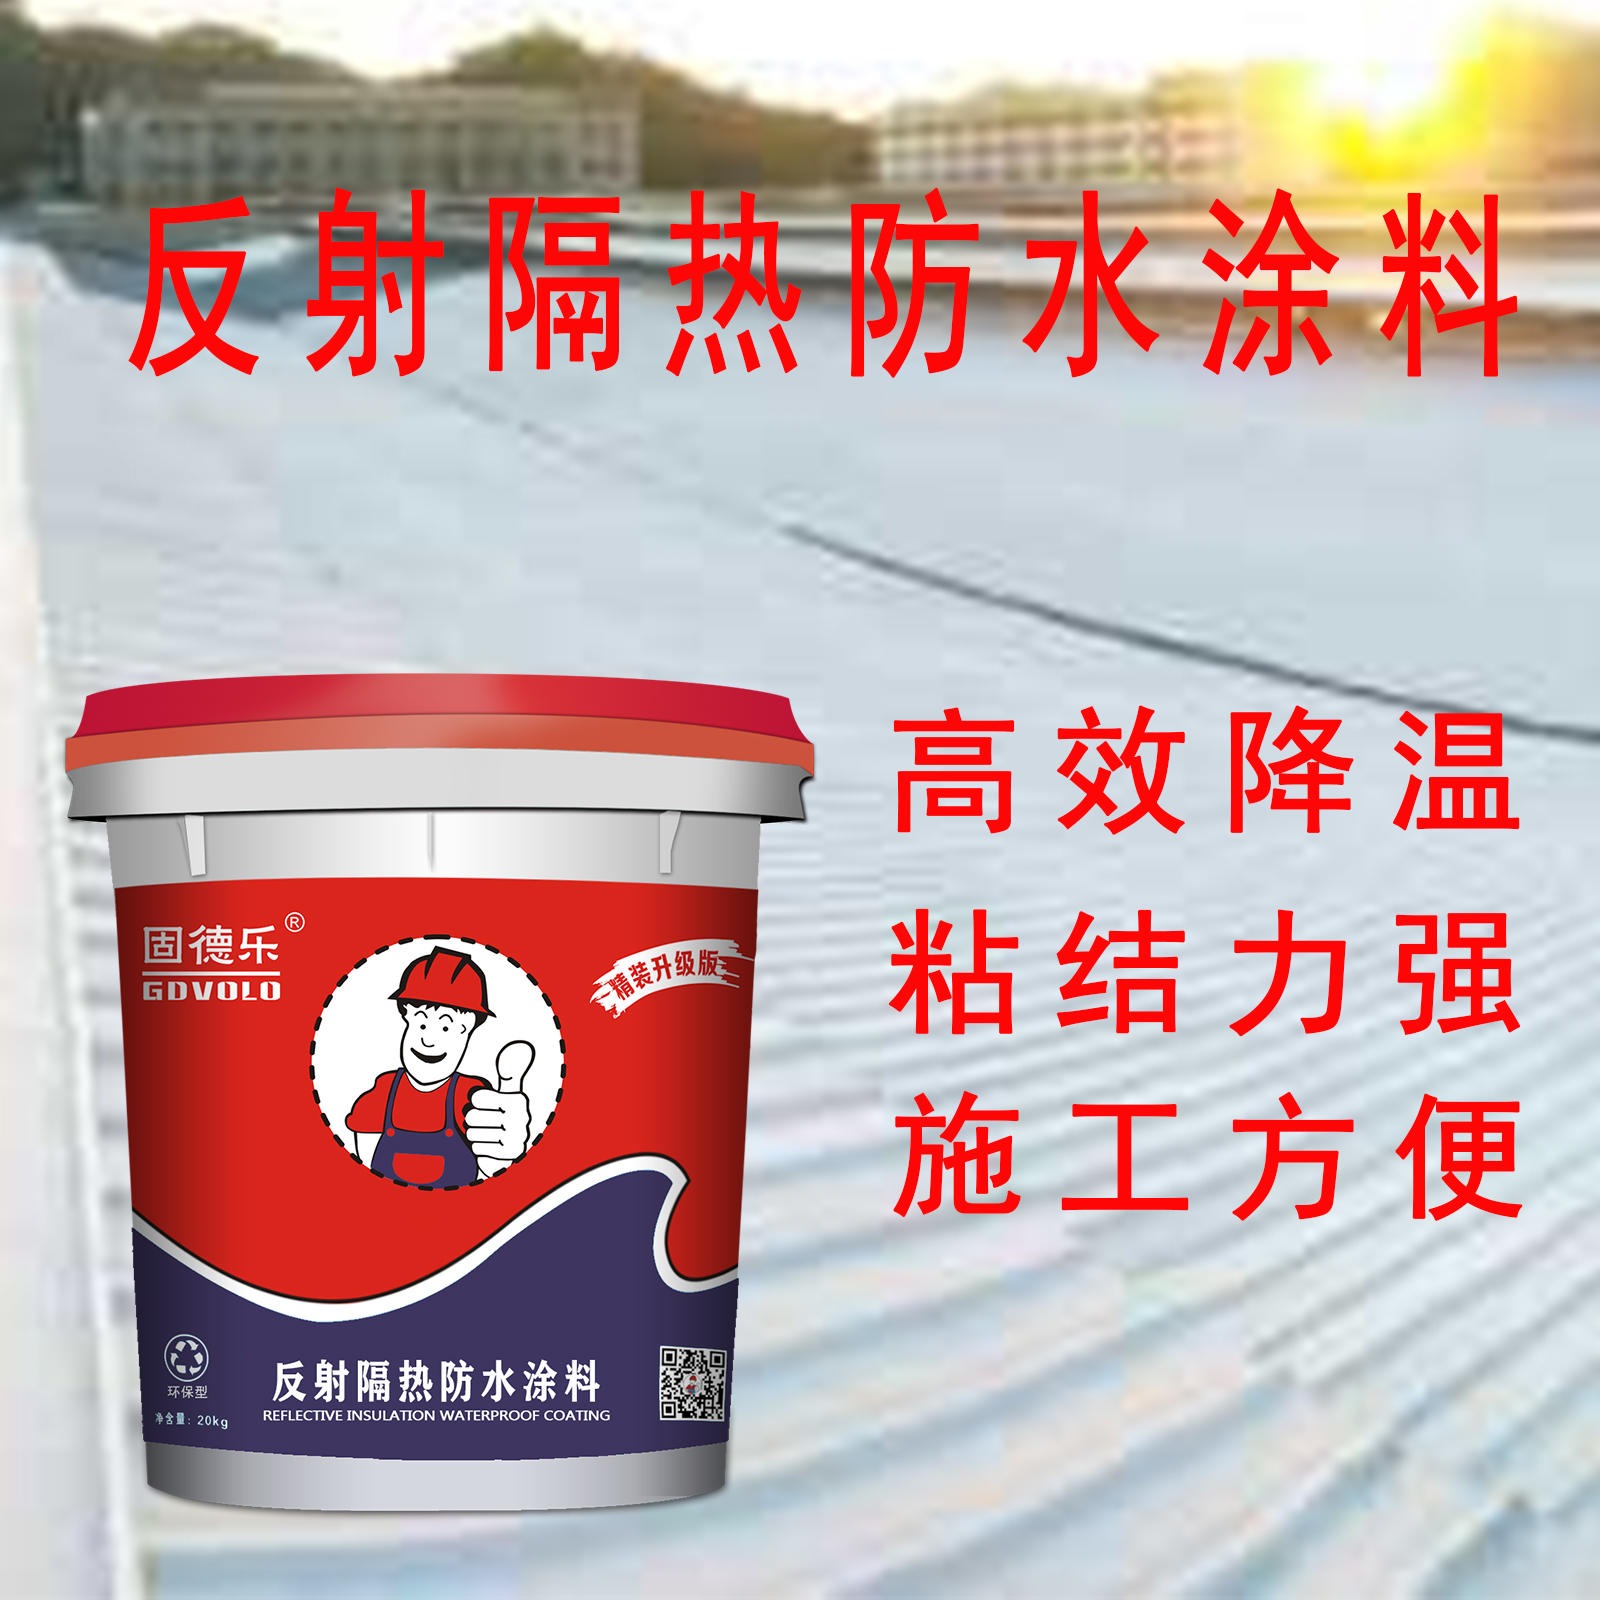 广州生产厂家质量保证 屋面夏季降温防晒隔热材料 防腐防锈涂料图片